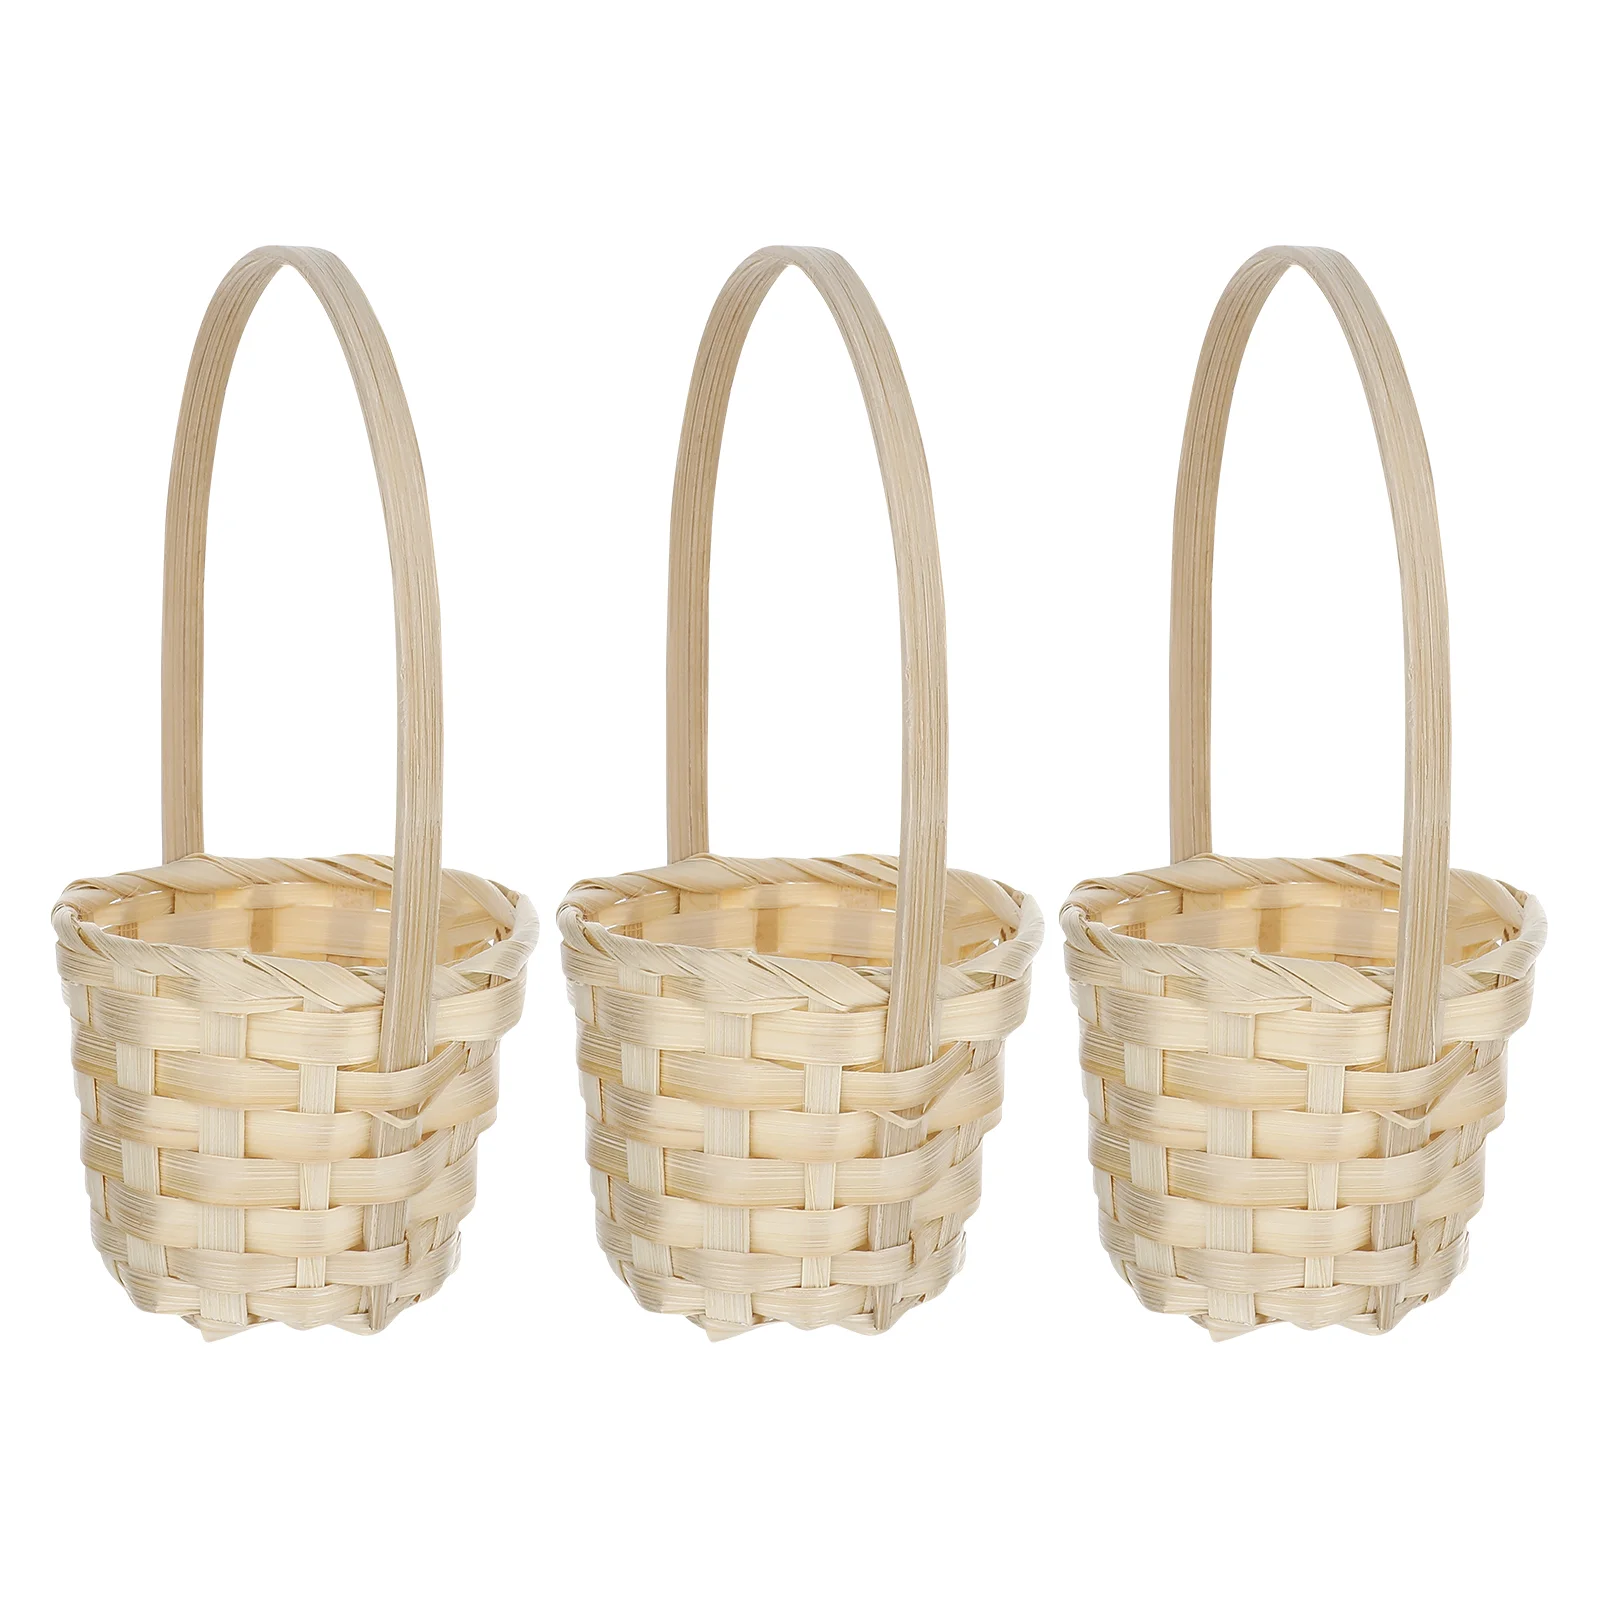 

5 Pcs Bread Basket Woven Baskets Wicker Planter Basket Weaved Basket Picnic Basket Storage Basket Flower Basket Handle